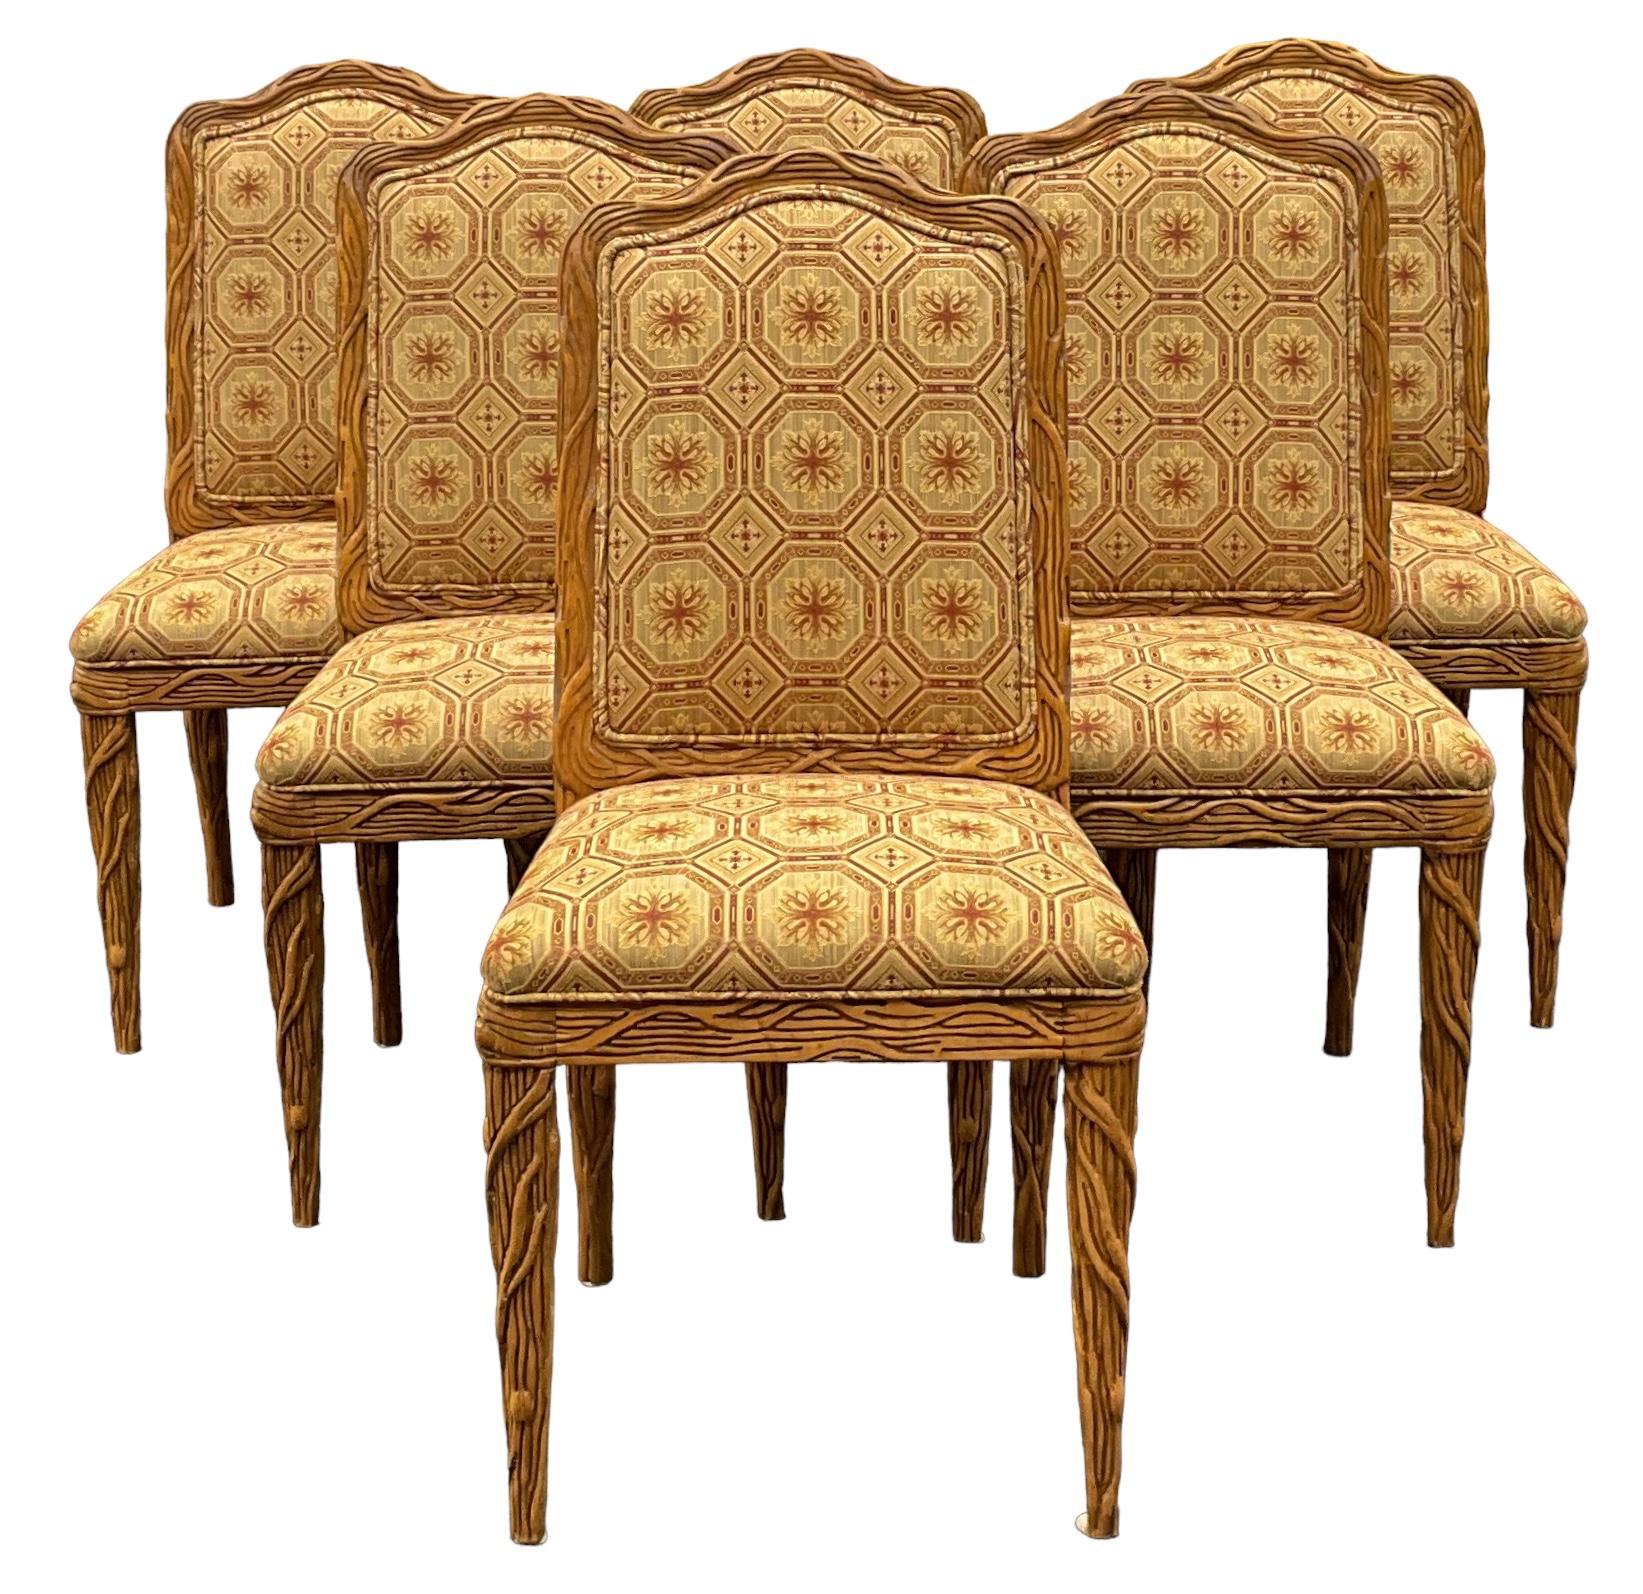 J'adore les chaises d'appoint ! Parfait pour la table ronde du petit déjeuner. Il s'agit d'un ensemble de chaises d'appoint en faux bois sculpté à la manière de Dennis et Leen. La tapisserie est d'époque et en très bon état, de même que les cadres.